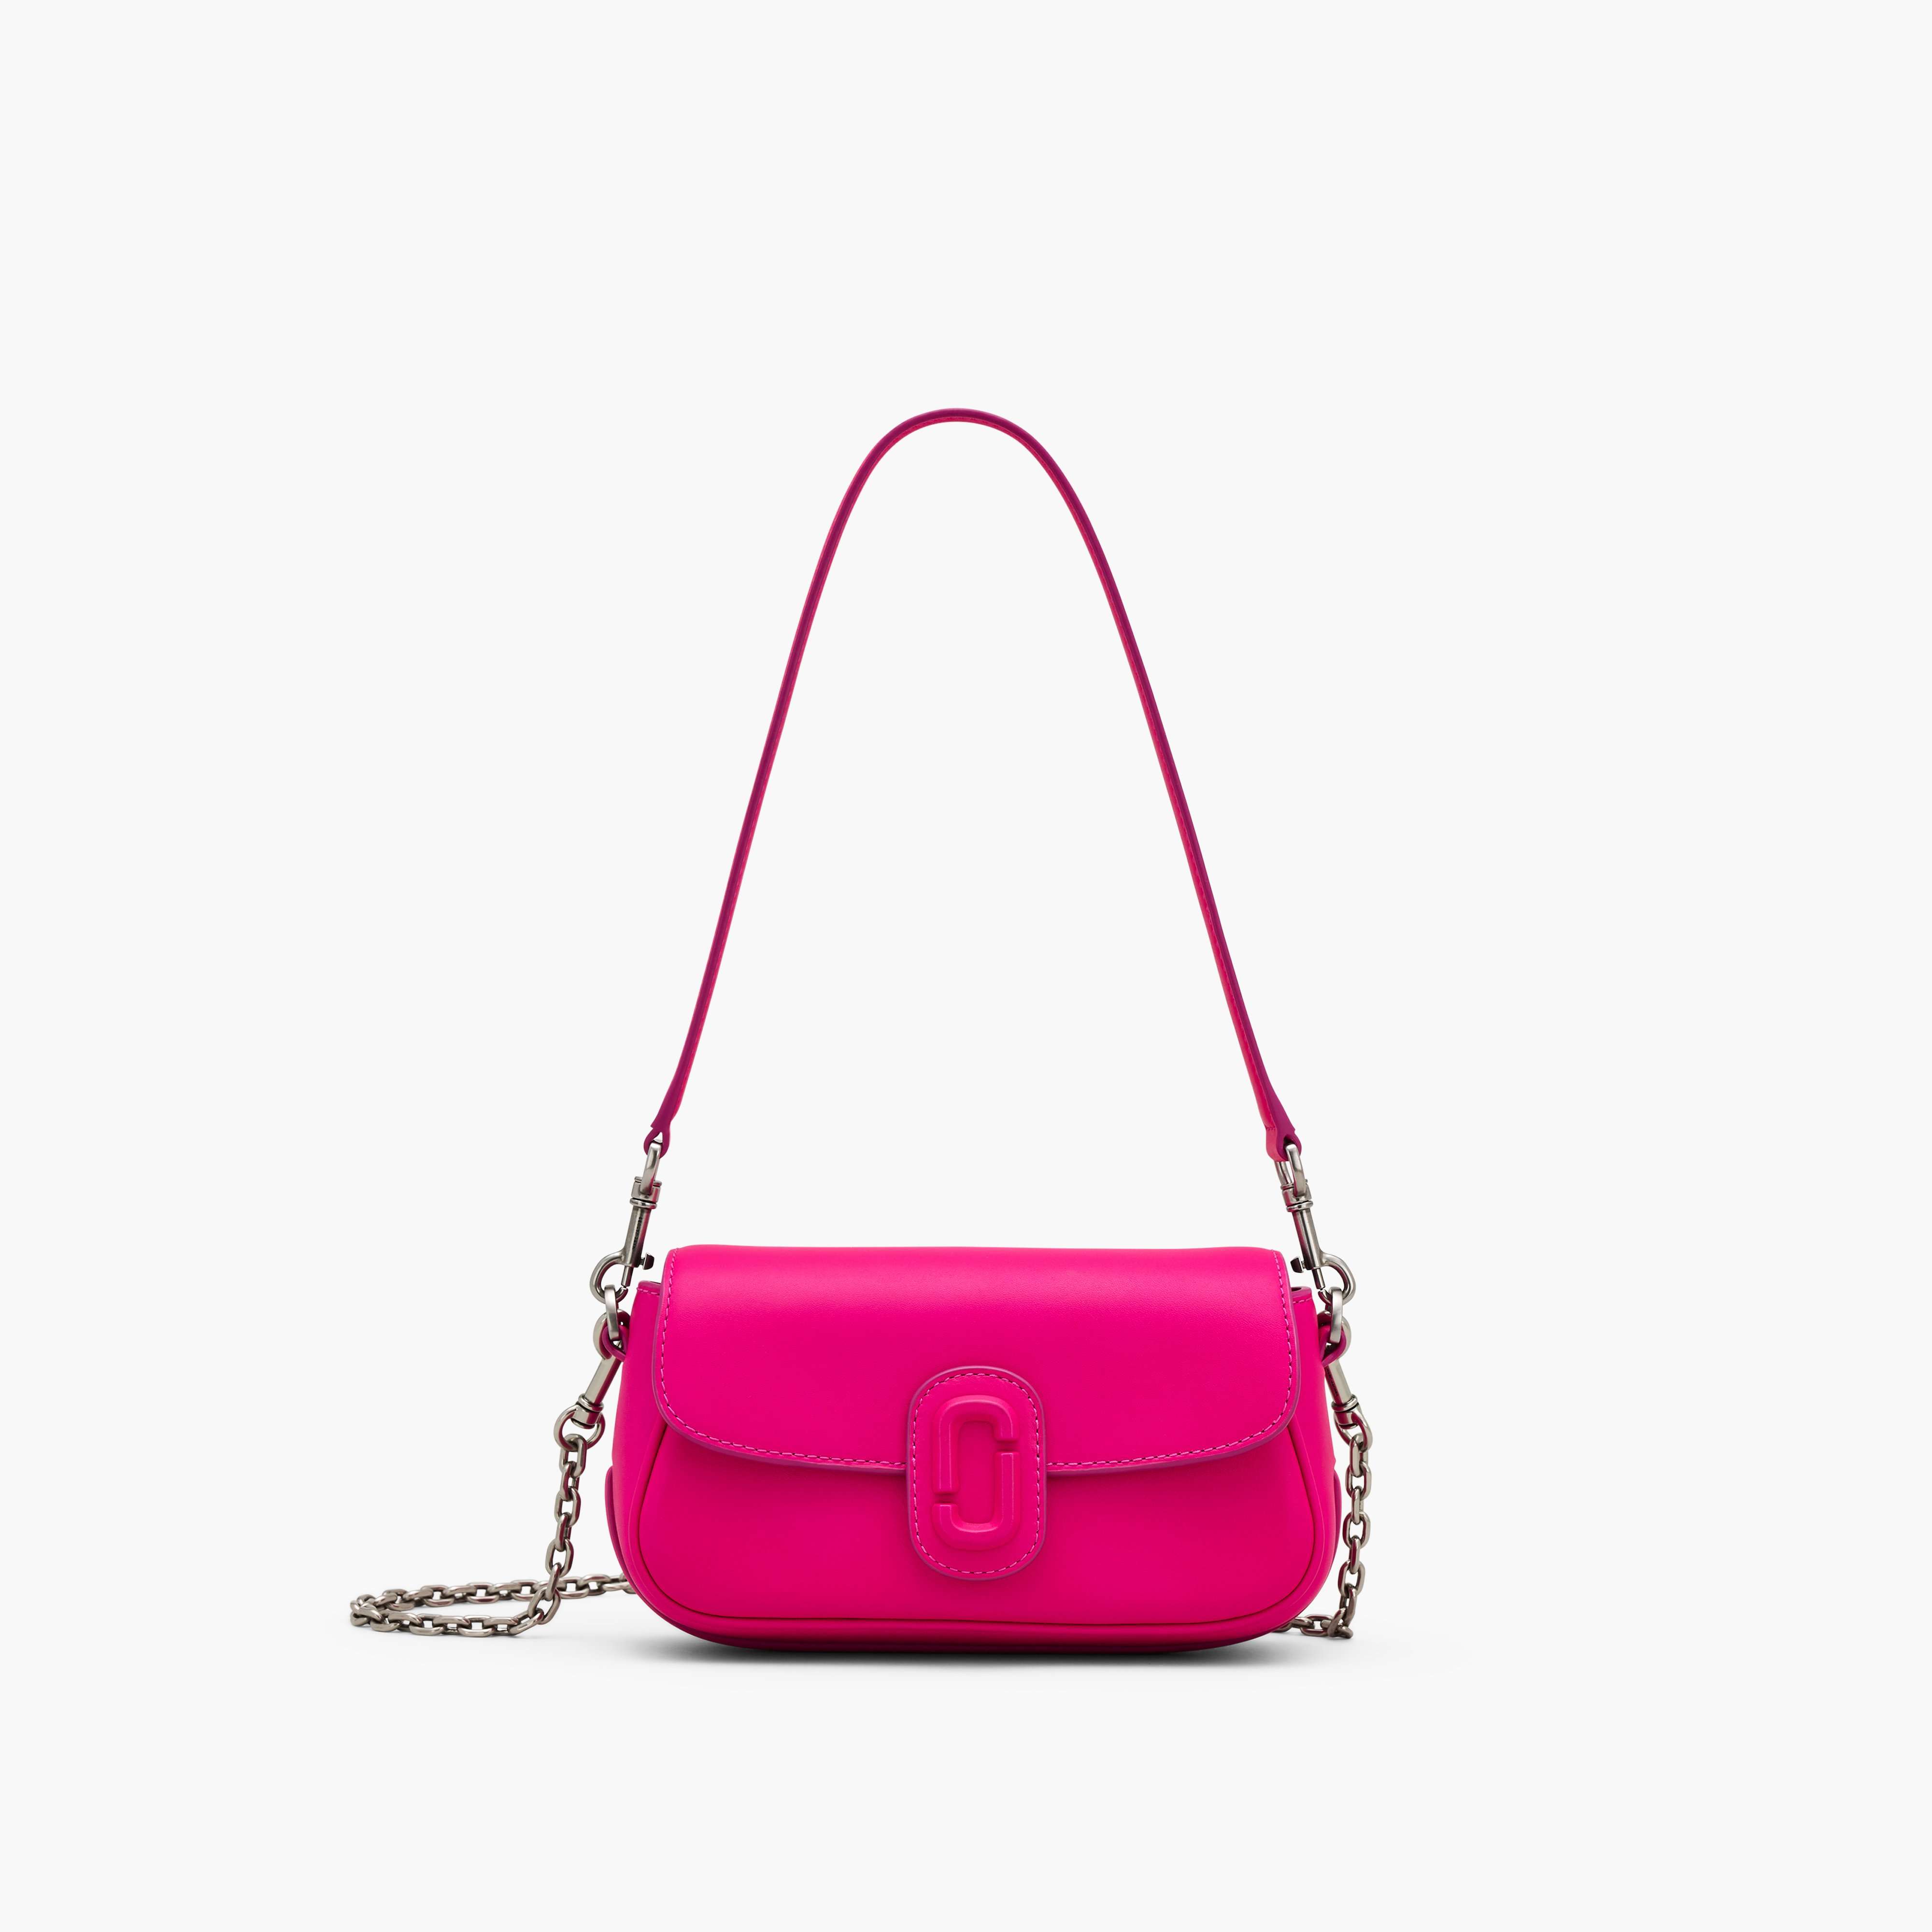 The Clover Shoulder Bag in Hot Pink